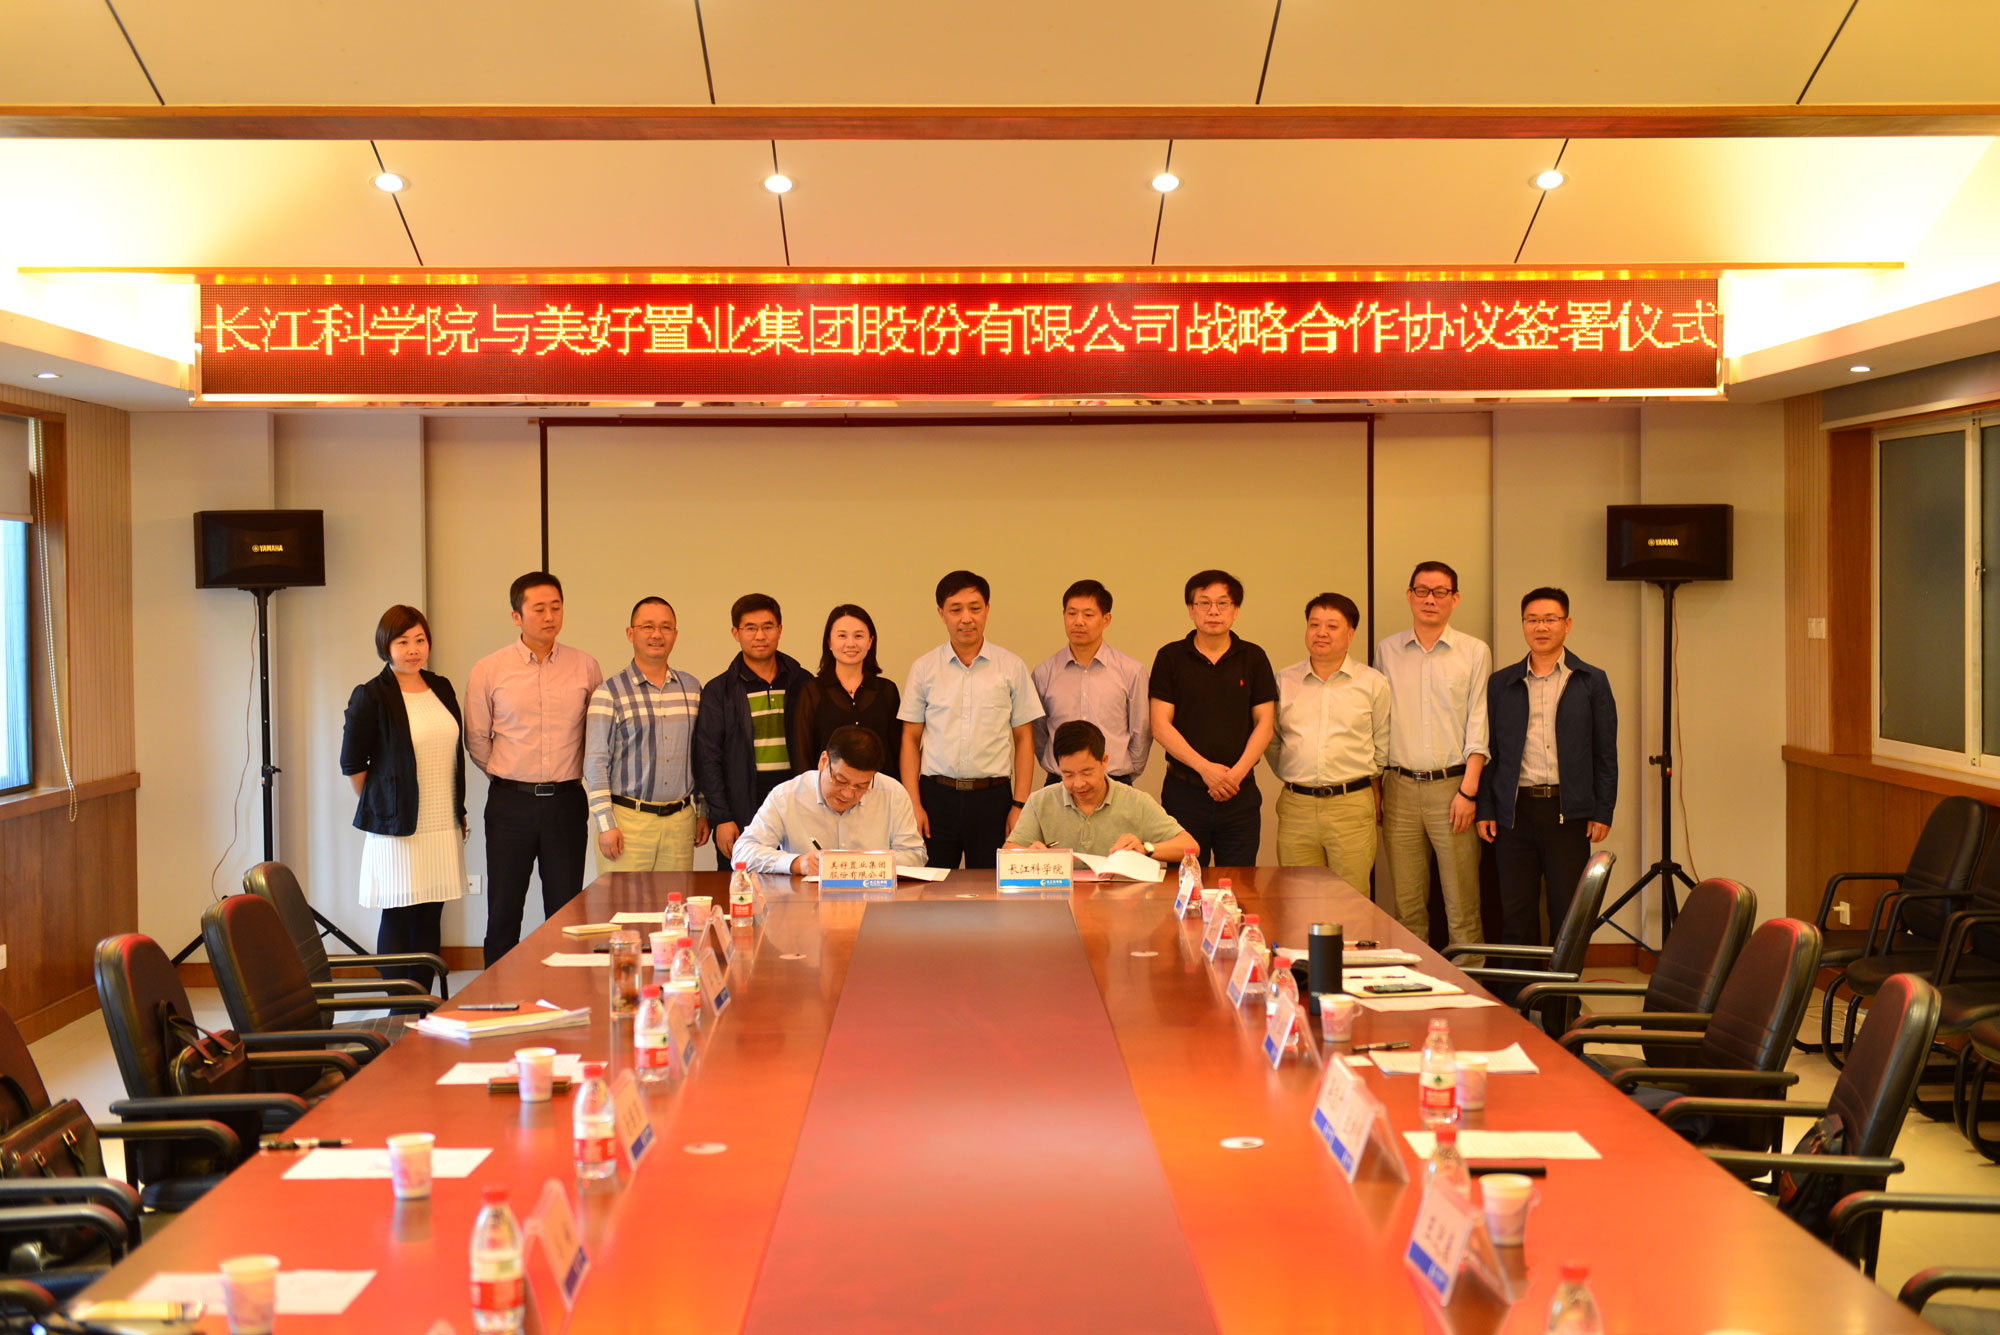 美好置业与长江科学院签署战略合作协议 共促乡村振兴和长江生态保护-中国网地产